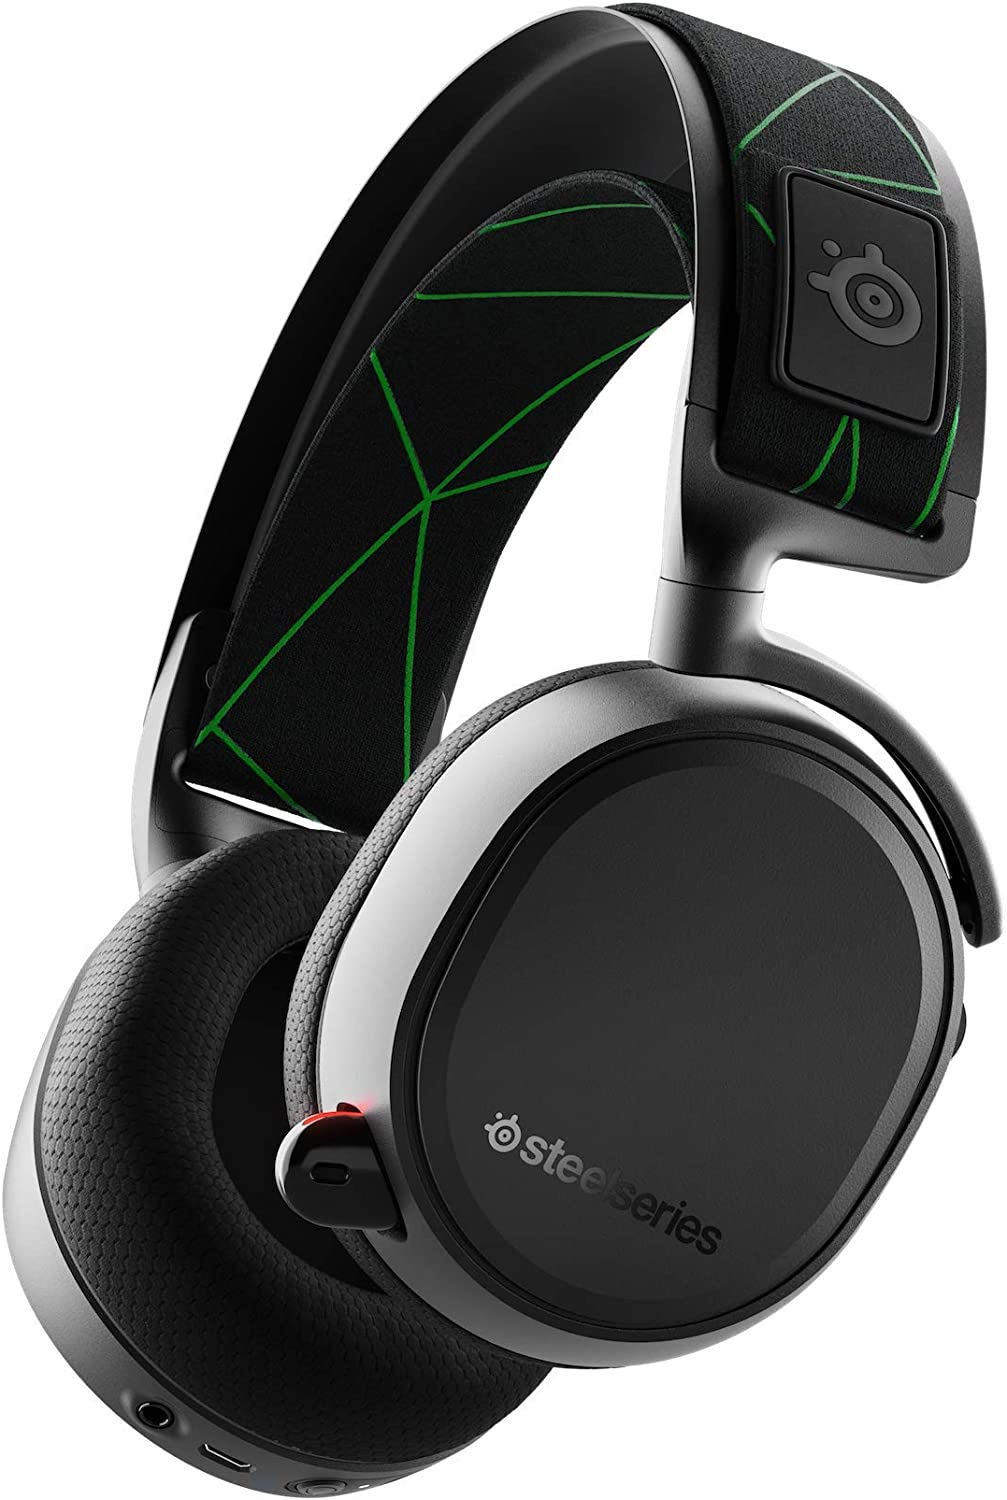 Bild zu Bluetooth Headset SteelSeries Arctis 9X für 111,67€ (Vergleich: 149,99€)